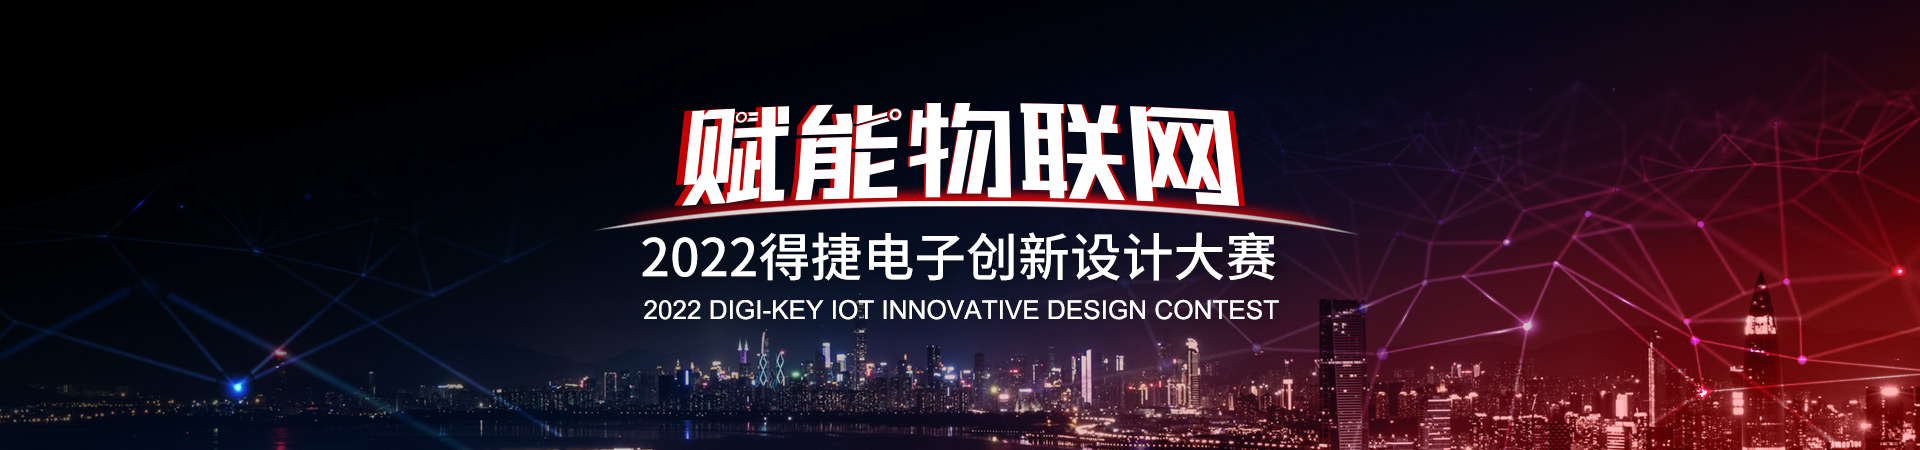 IoT Design Contest Cover.jpg